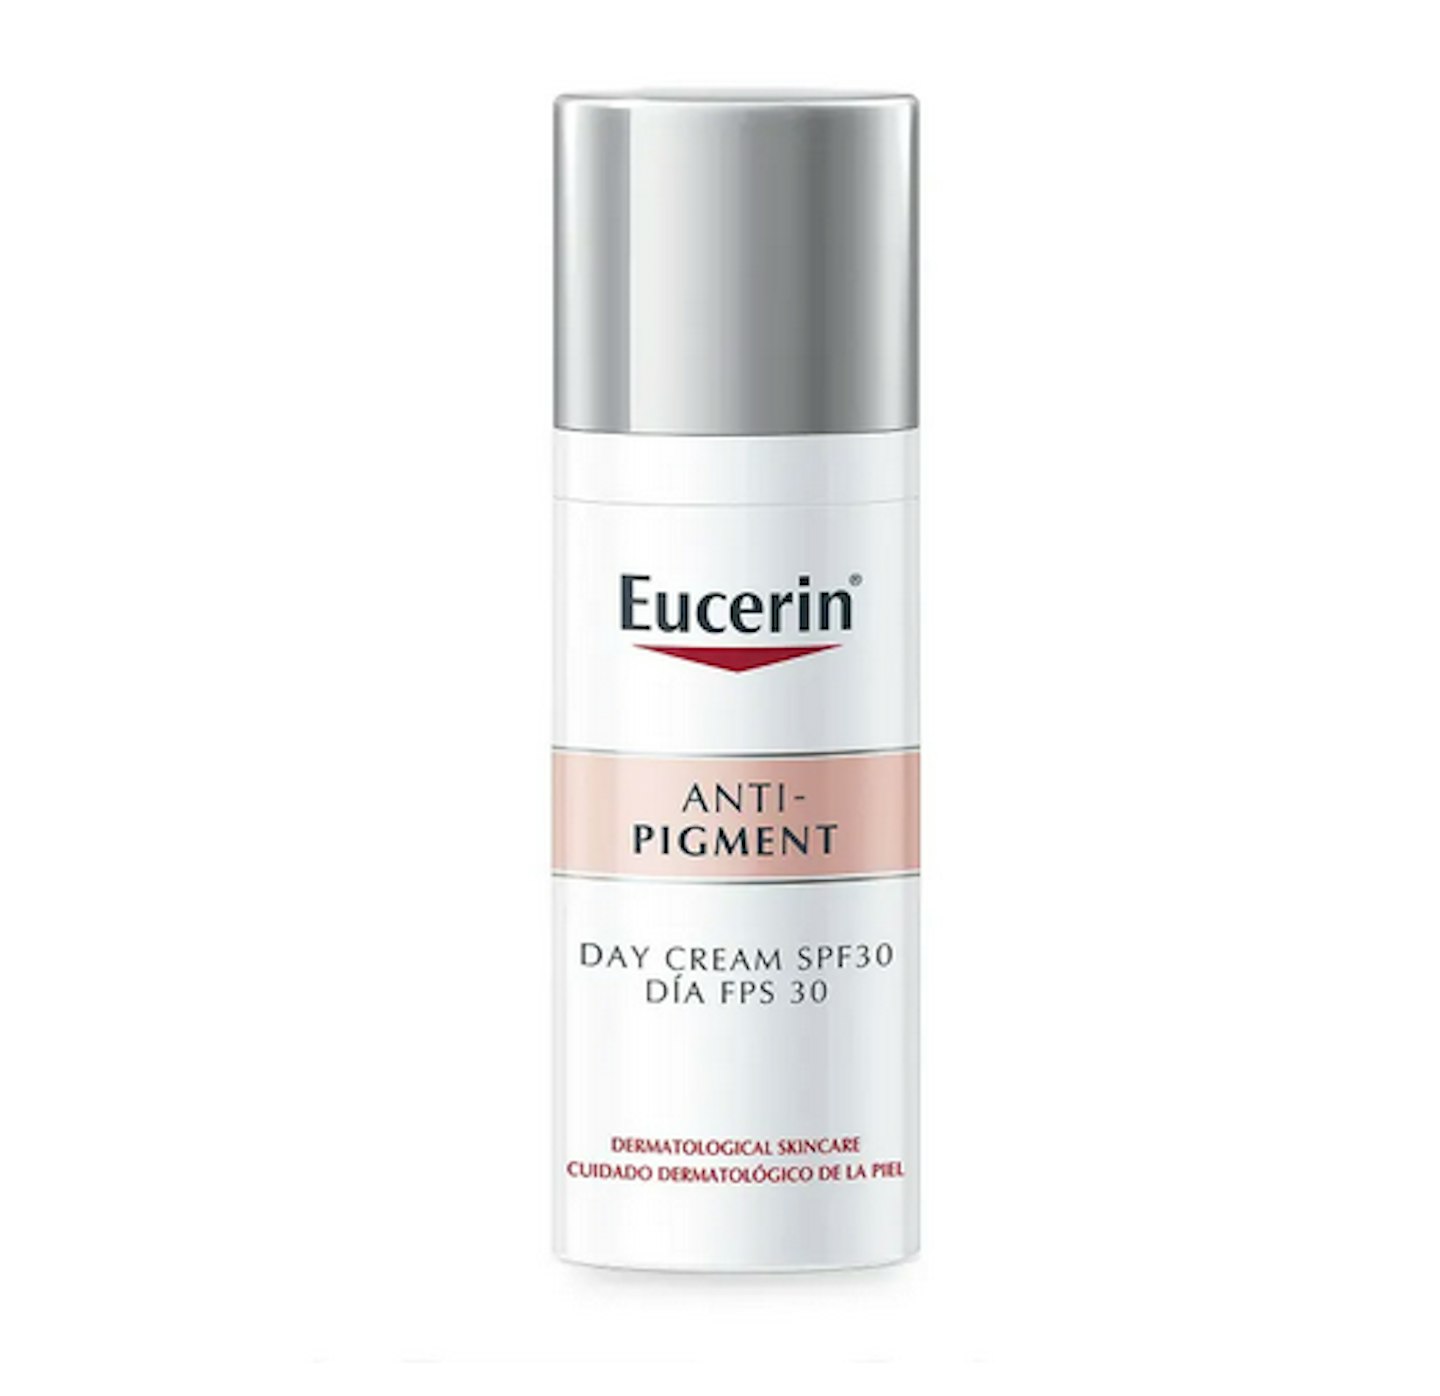 Eucerin Anti-Pigment Day Cream SPF30, £25